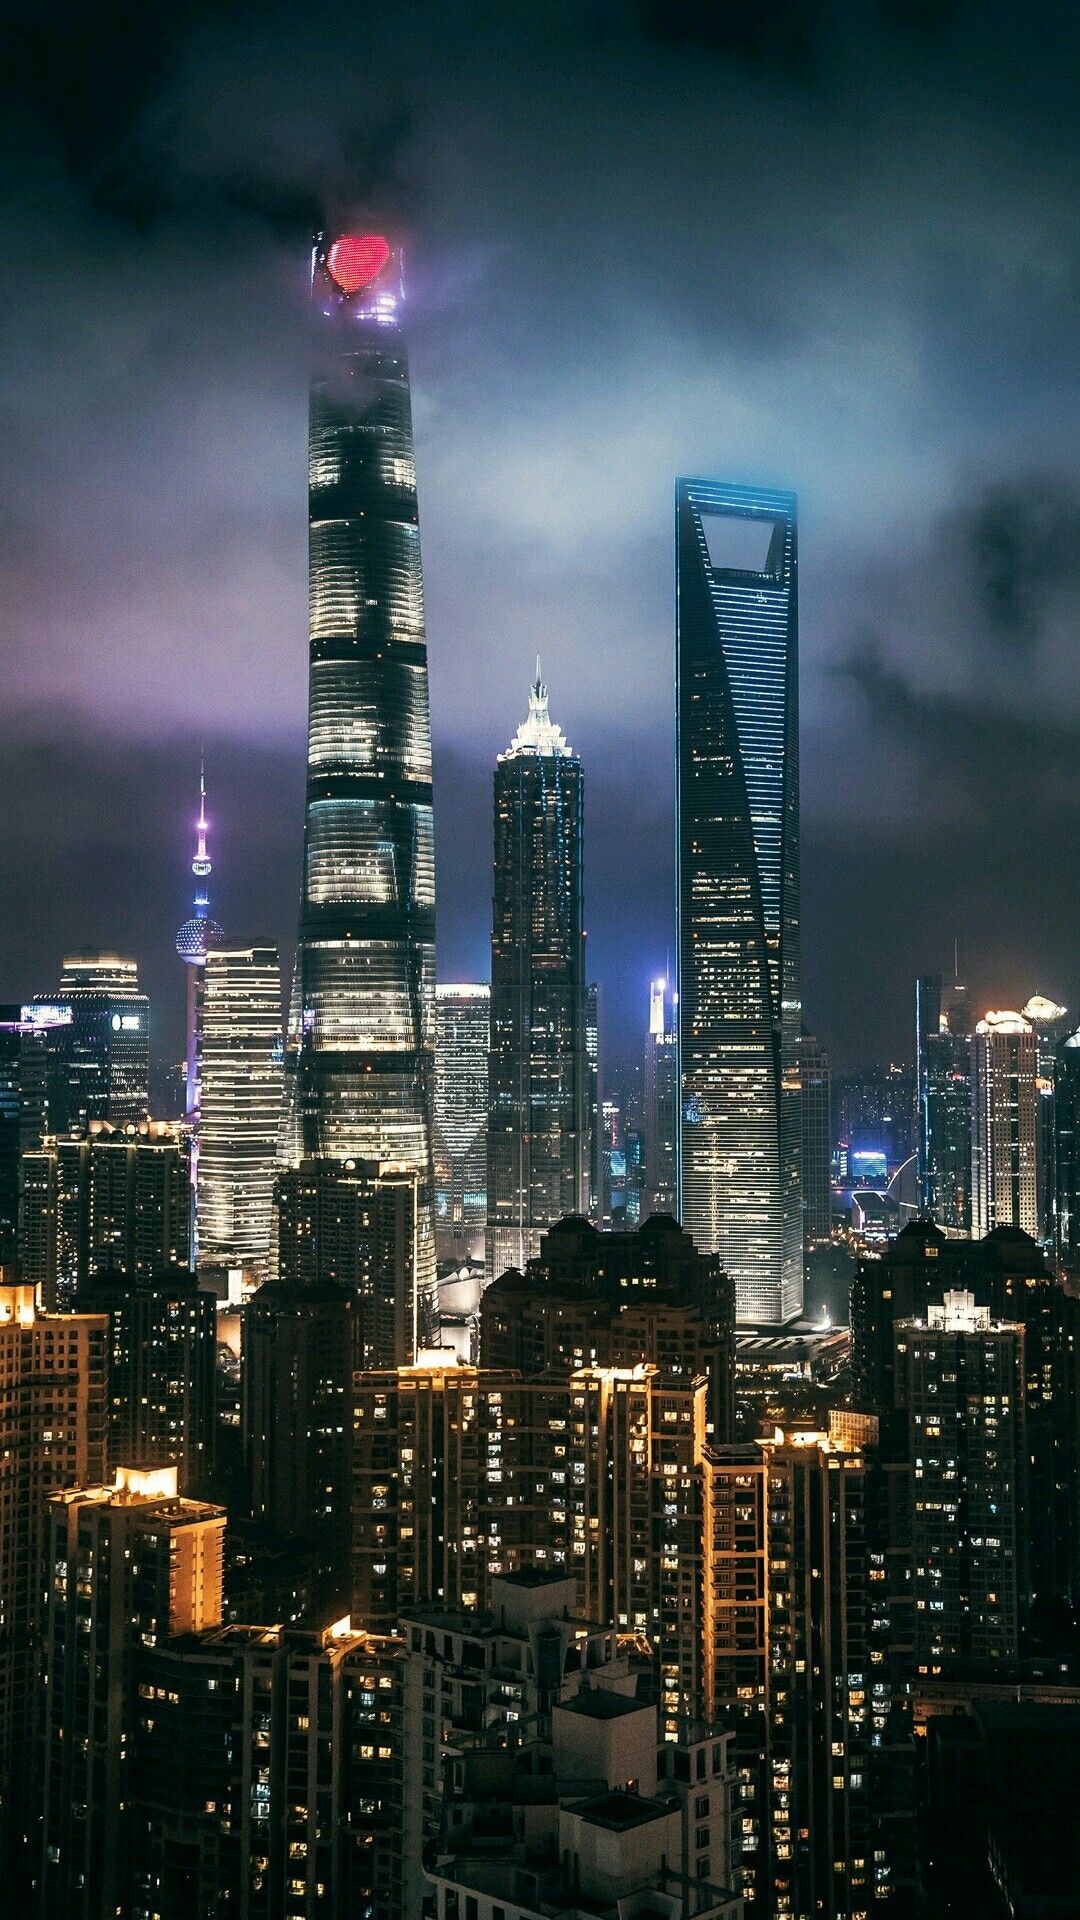 Shanghai Skyline, City night view, Skyscrapers, Stunning wallpaper, 1080x1920 Full HD Phone